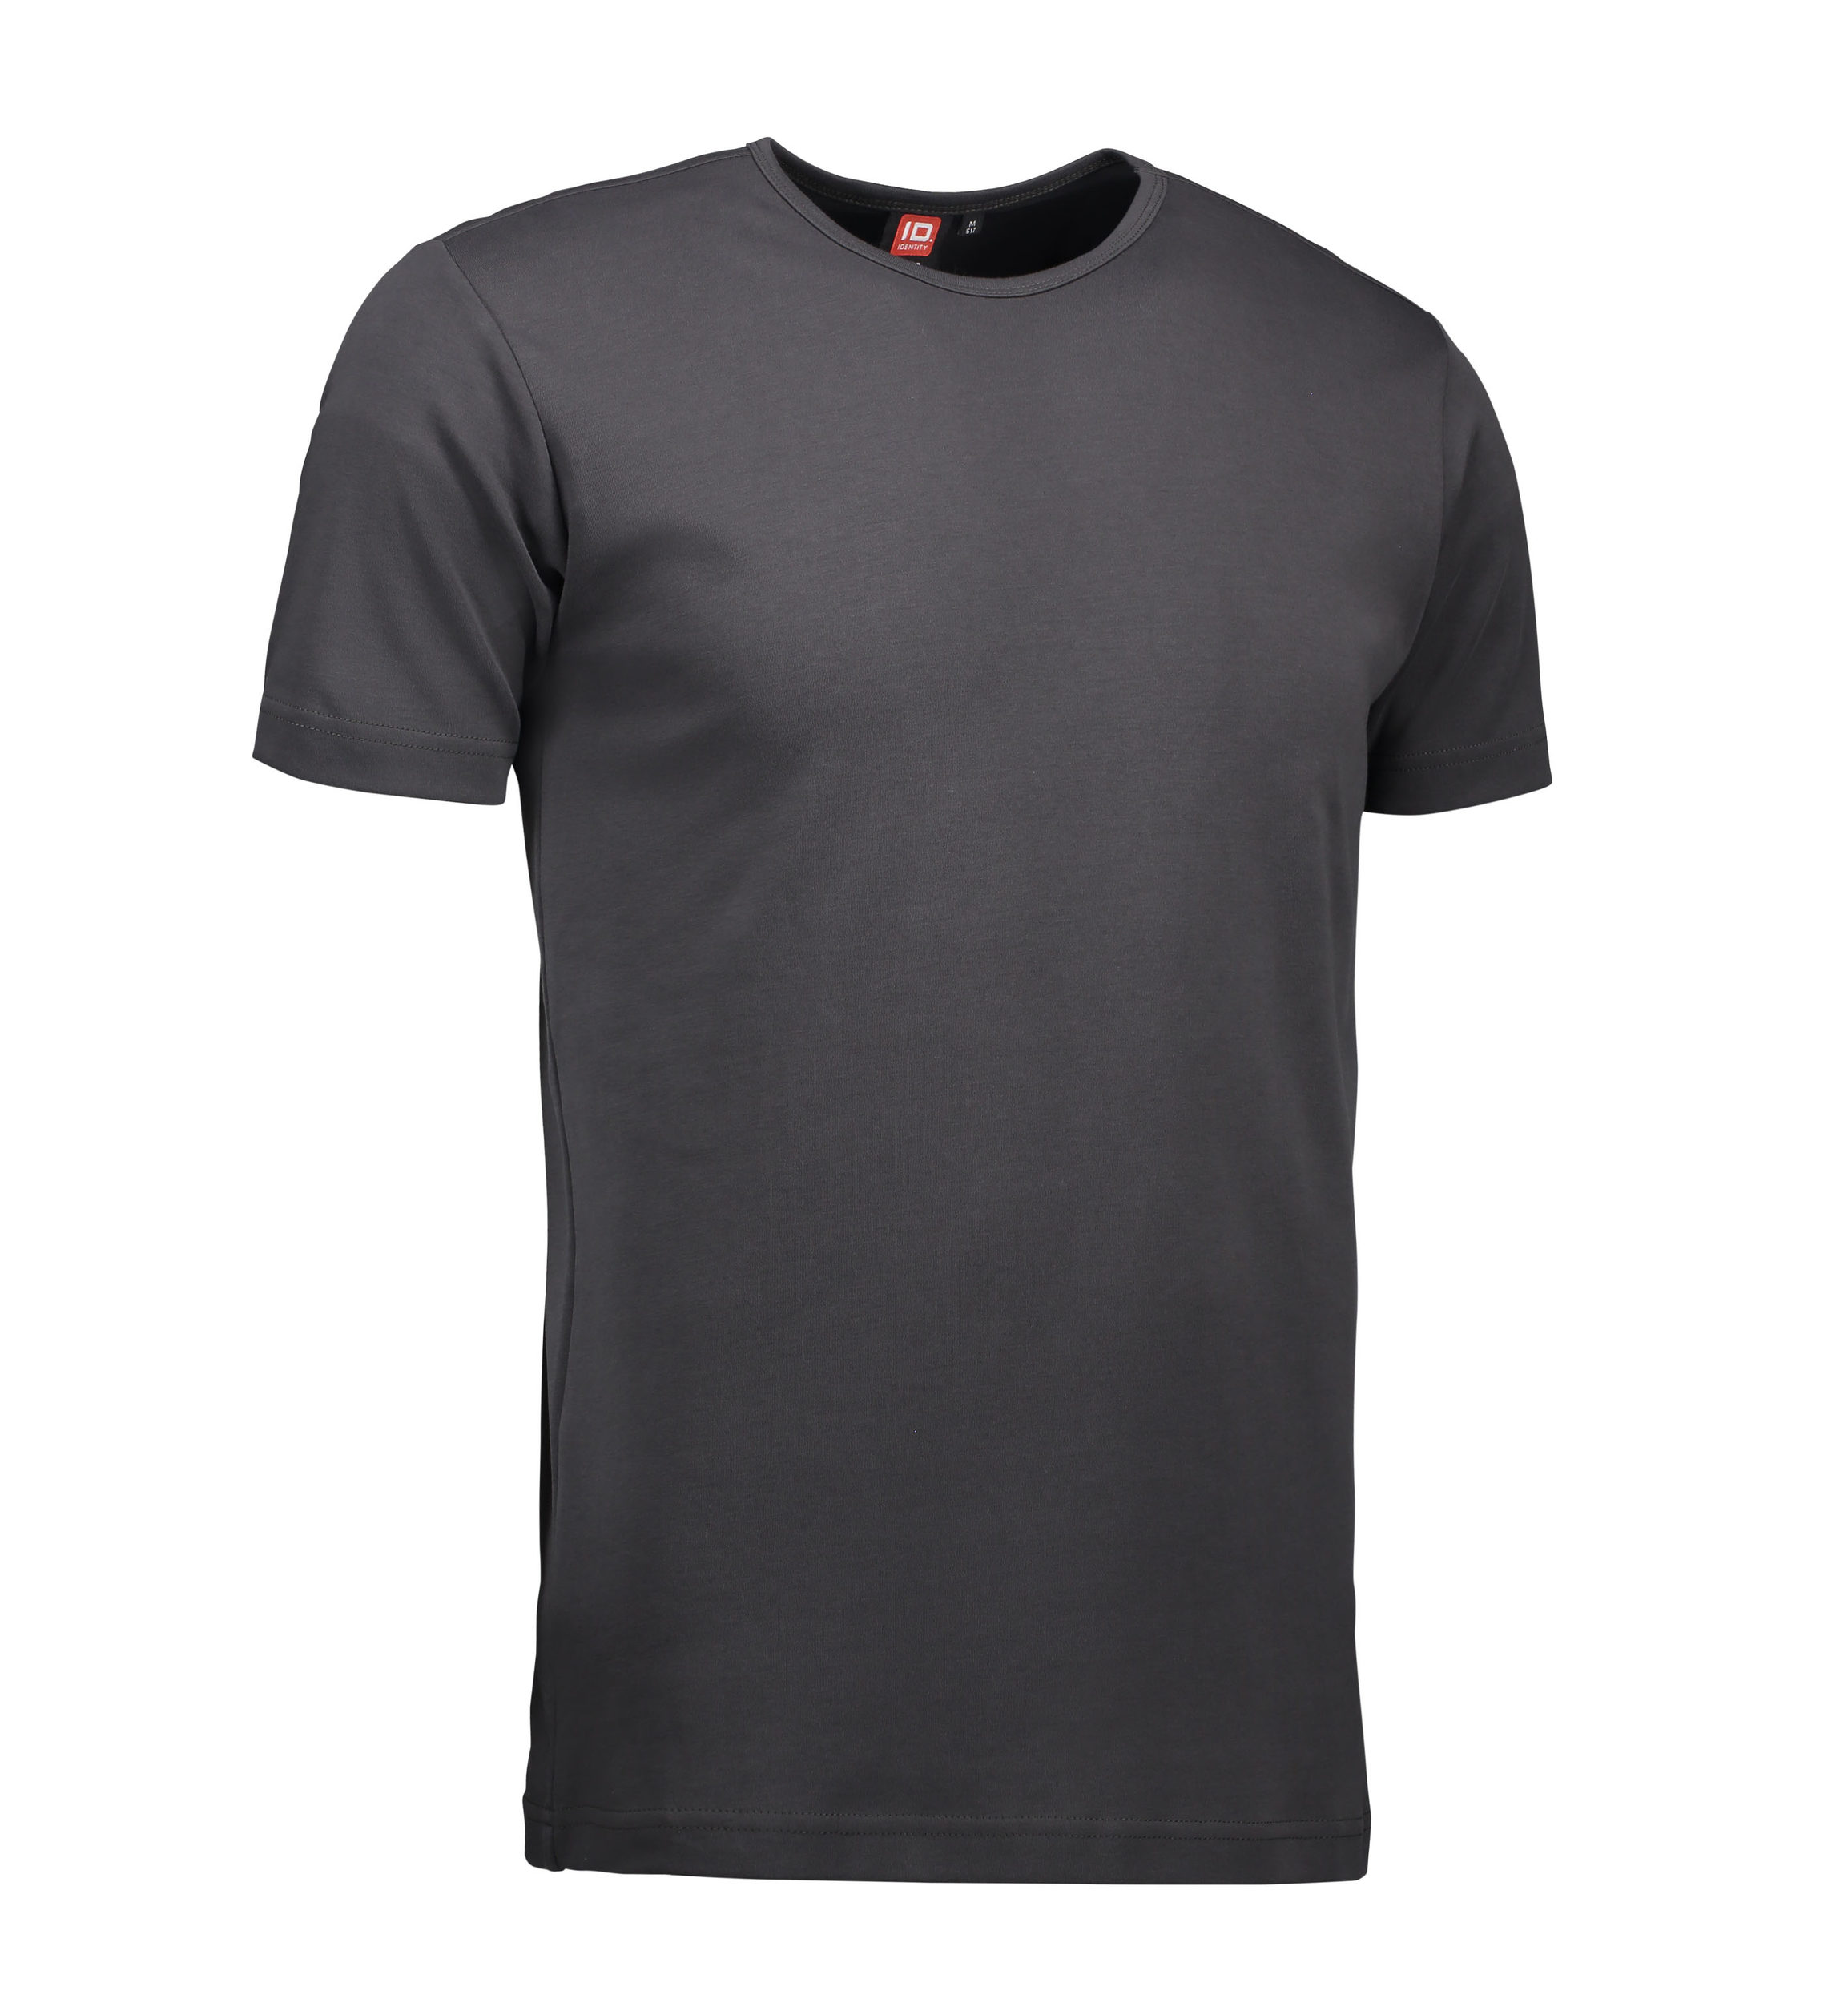 Billede af Koks grå t-shirt med rund hals til mænd - 3XL hos Sygeplejebutikken.dk